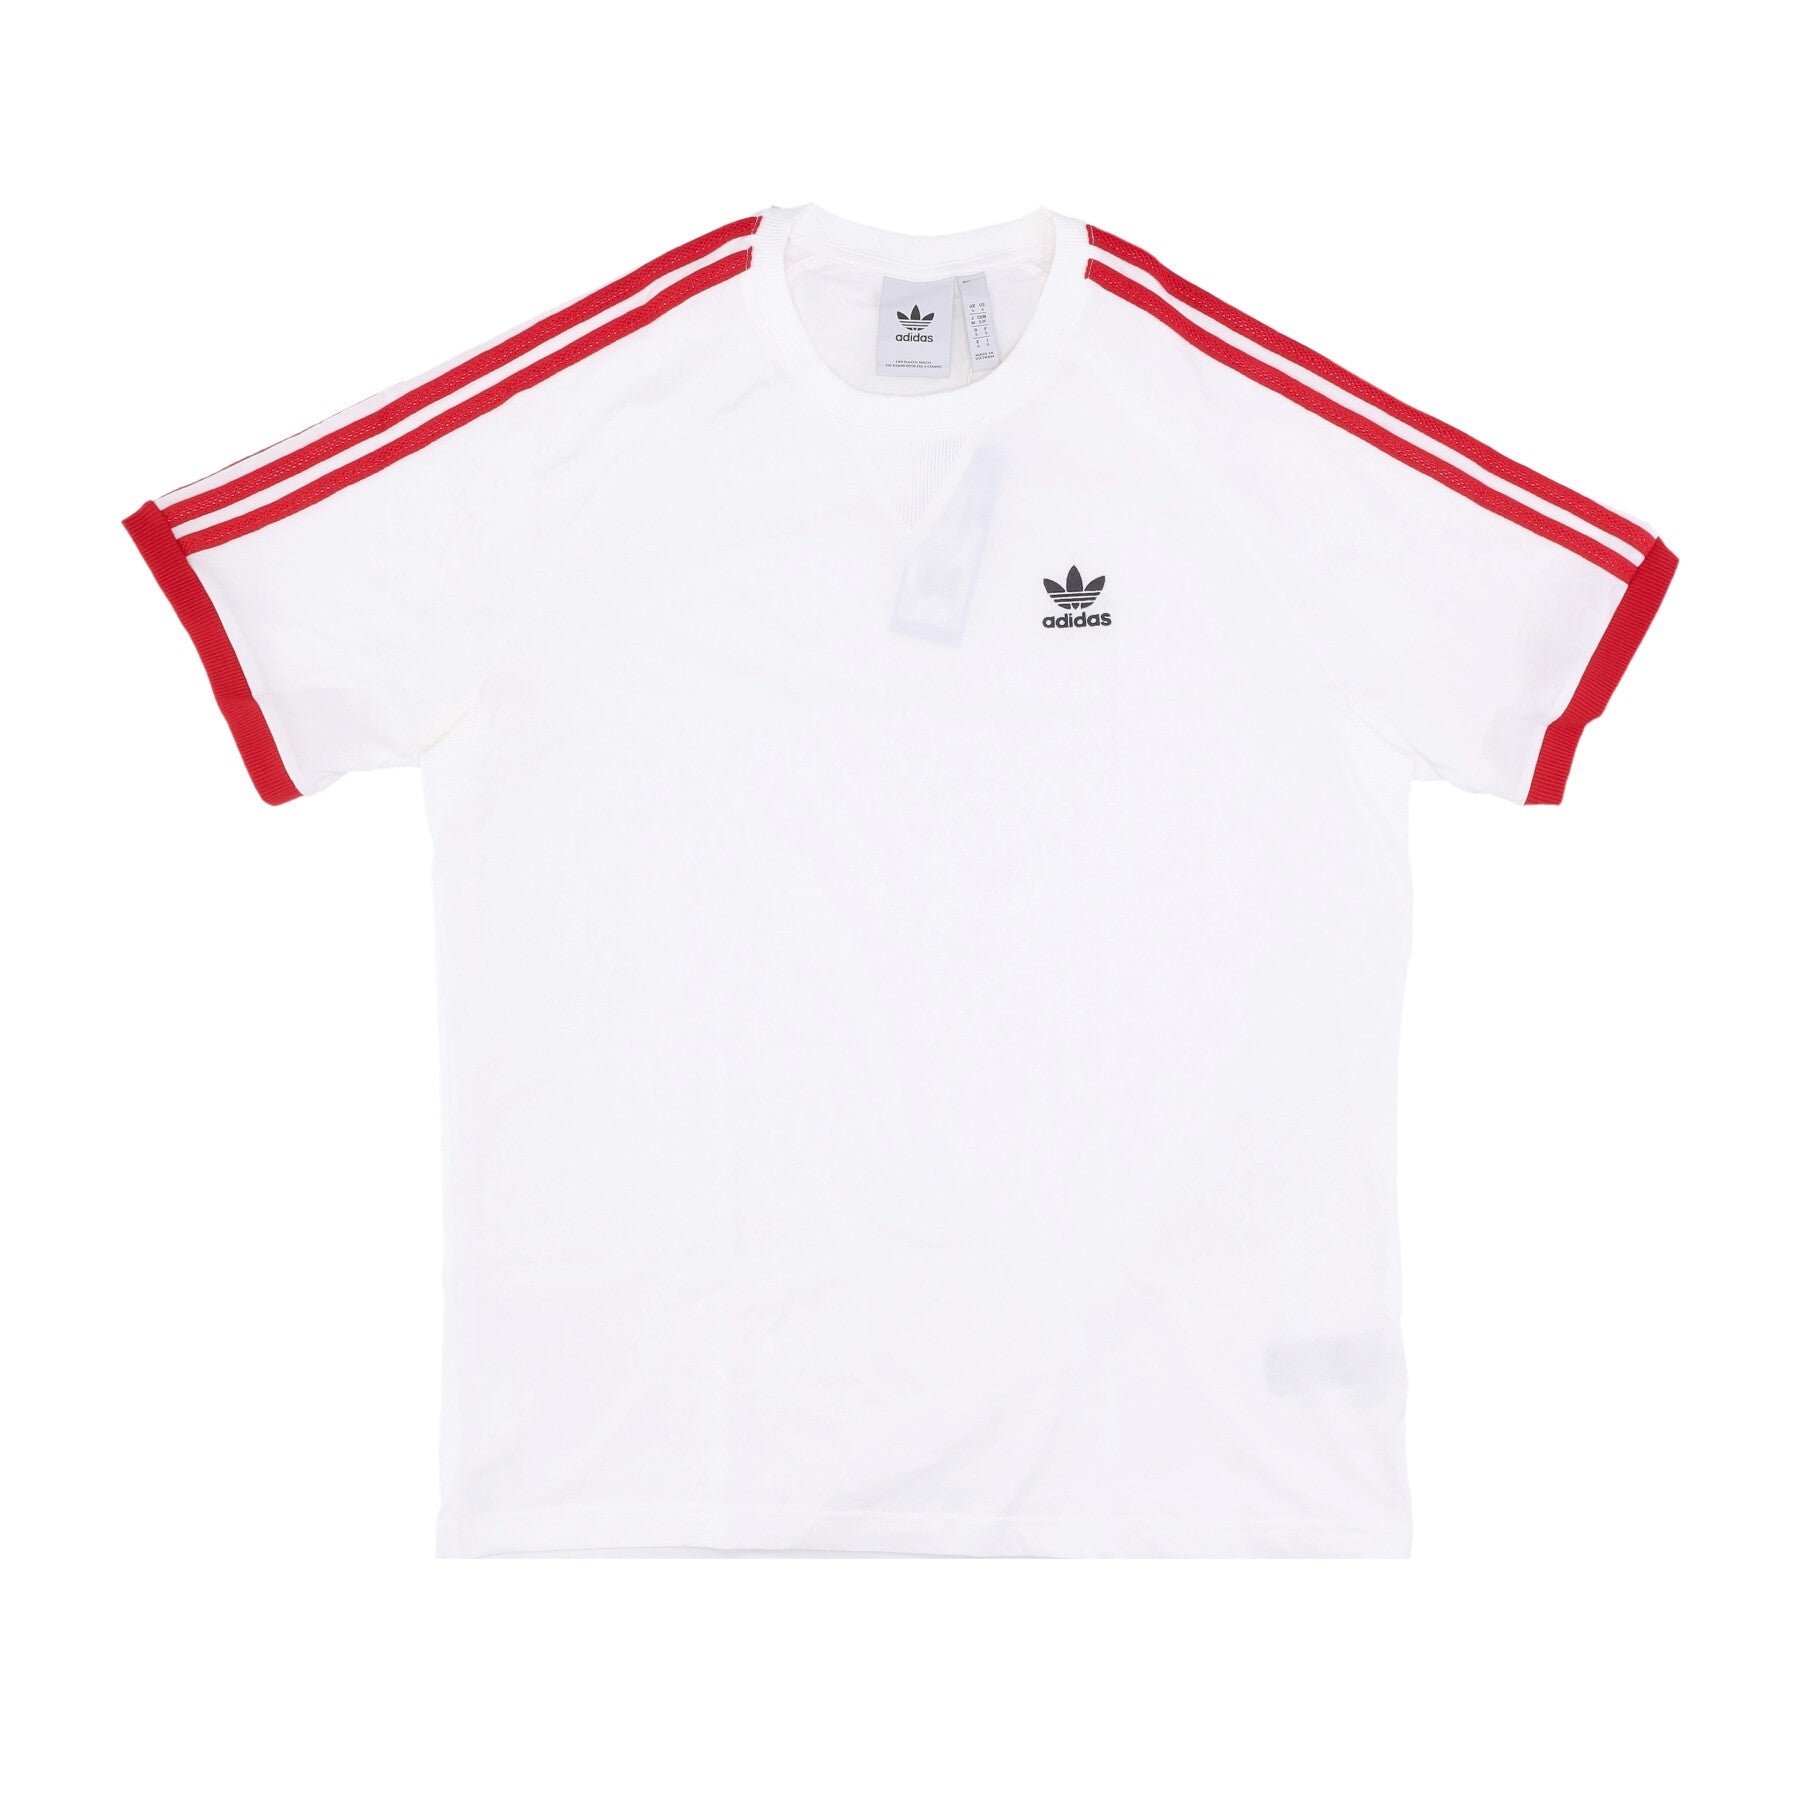 Adidas, Maglietta Uomo 3-stripes Tee, White/better Scarlet